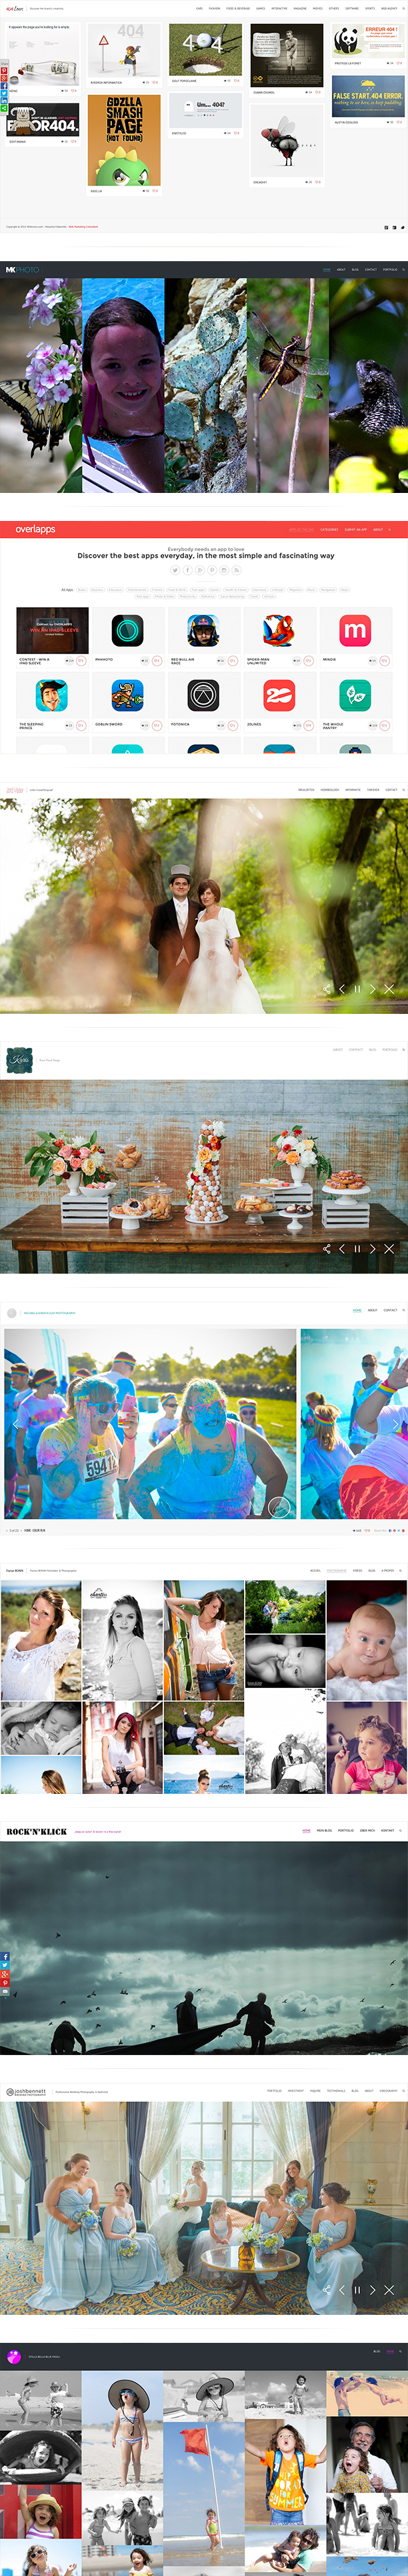 Photography Portfolio WordPress Theme - Oyster - 1